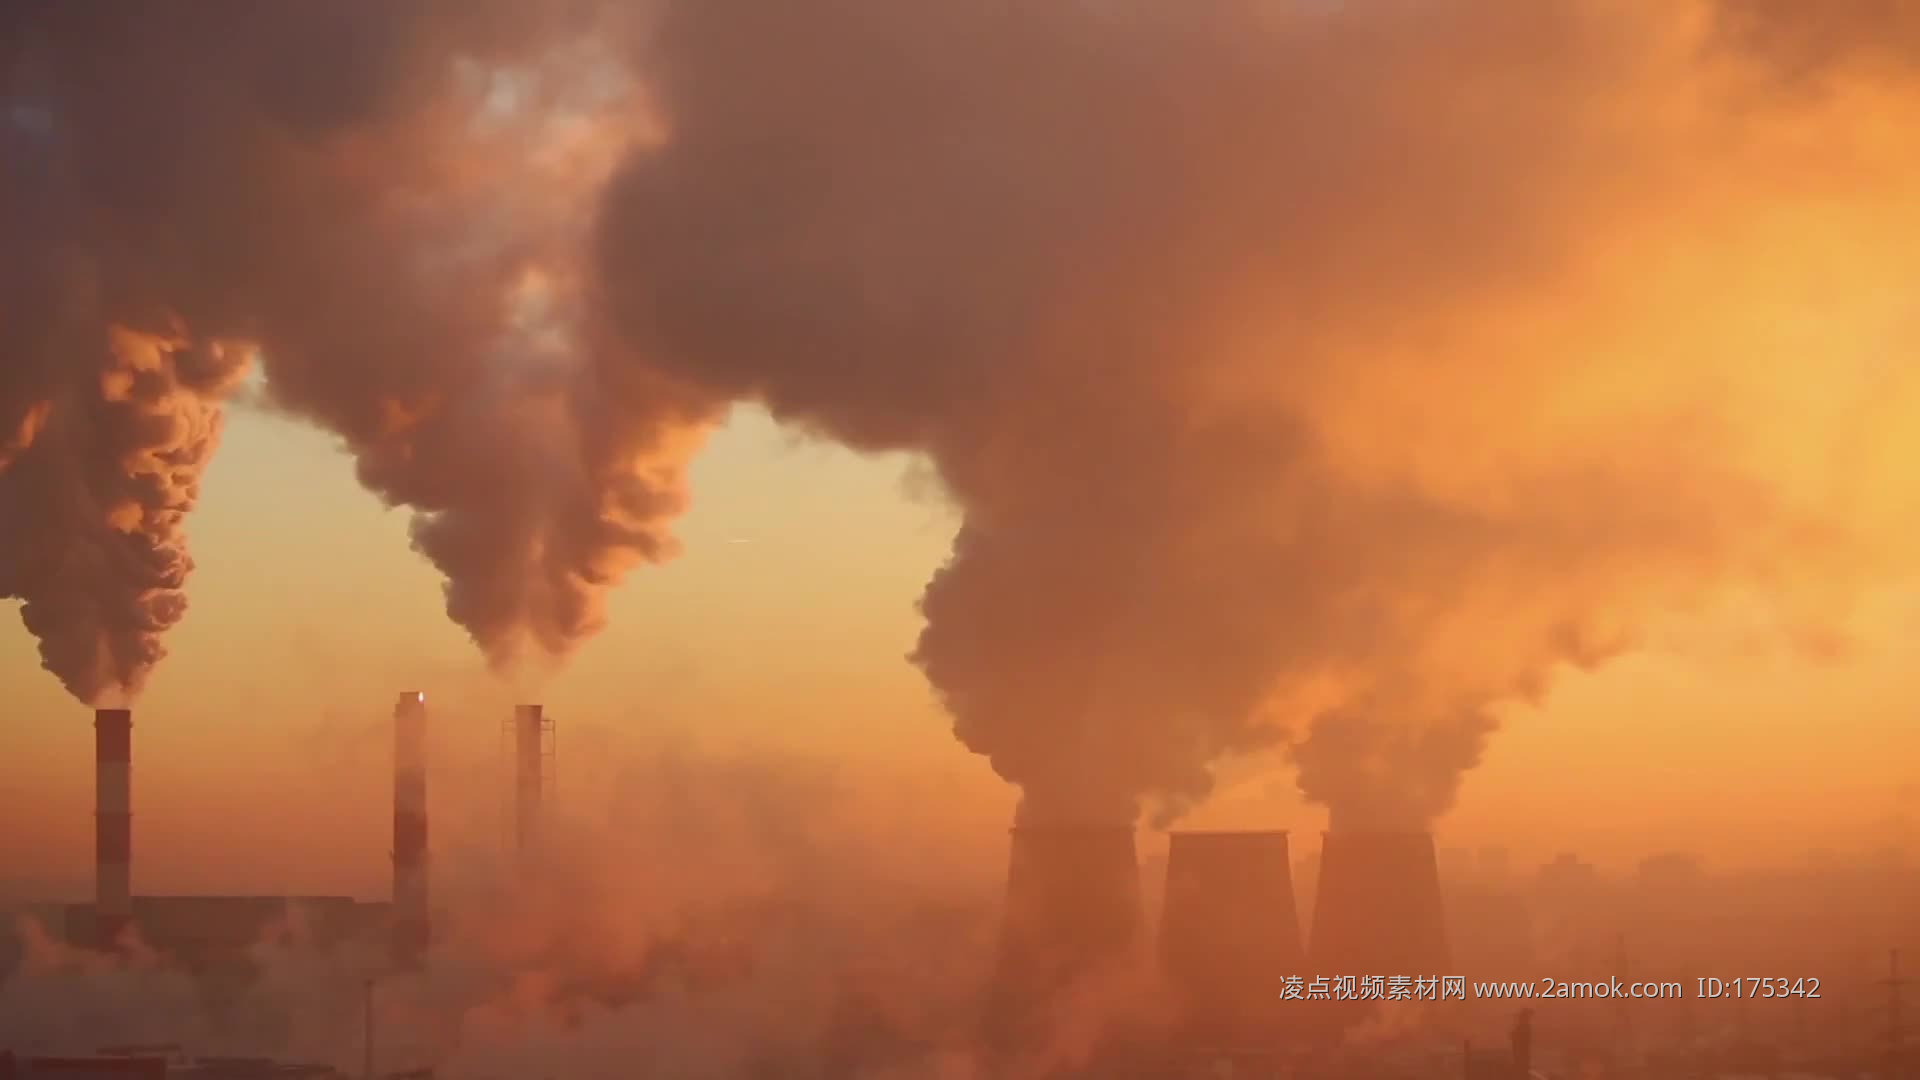 有哪些关于环境污染比较震撼的图片或资料数据？ - 知乎